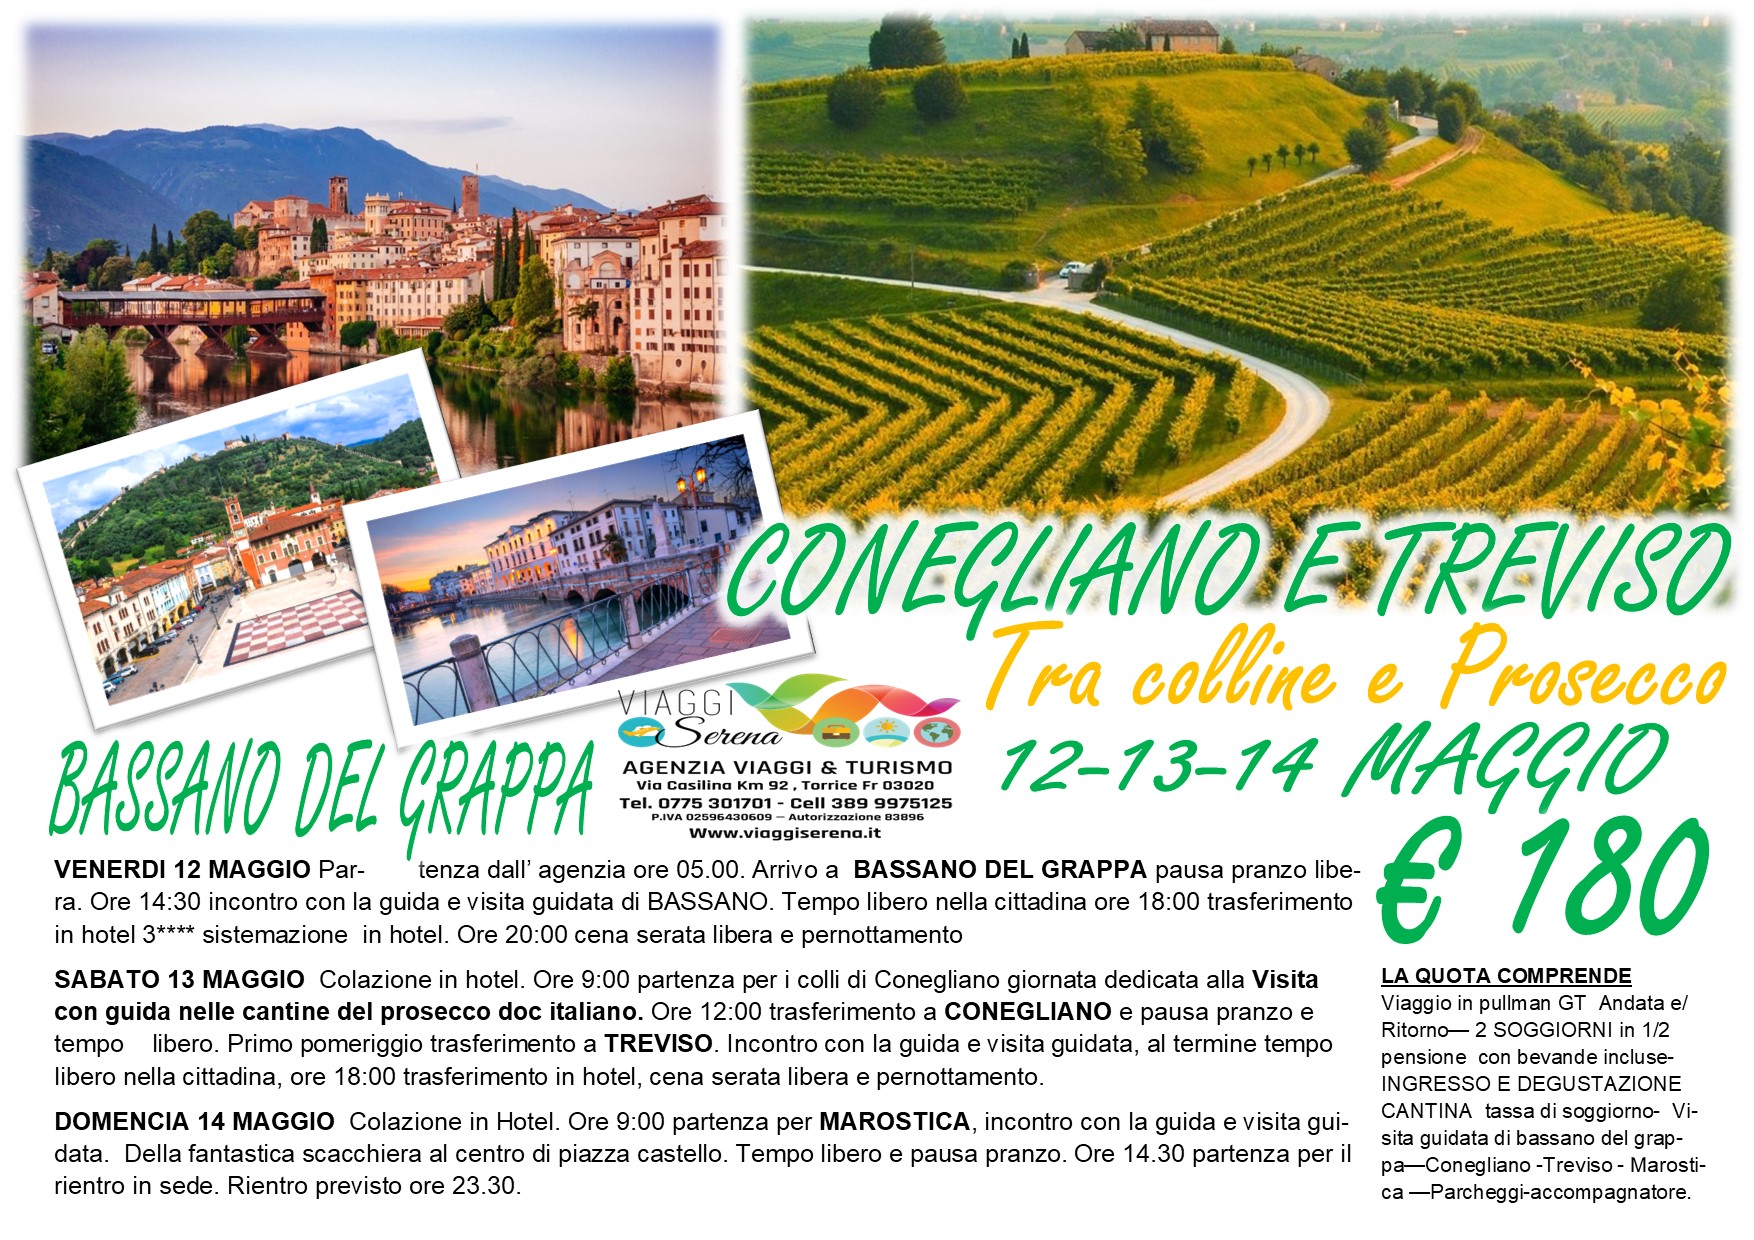 Viaggi di Gruppo: Conegliano, Treviso, Bassano del Grappa & Marostica 12-13-14 Maggio € 180,00